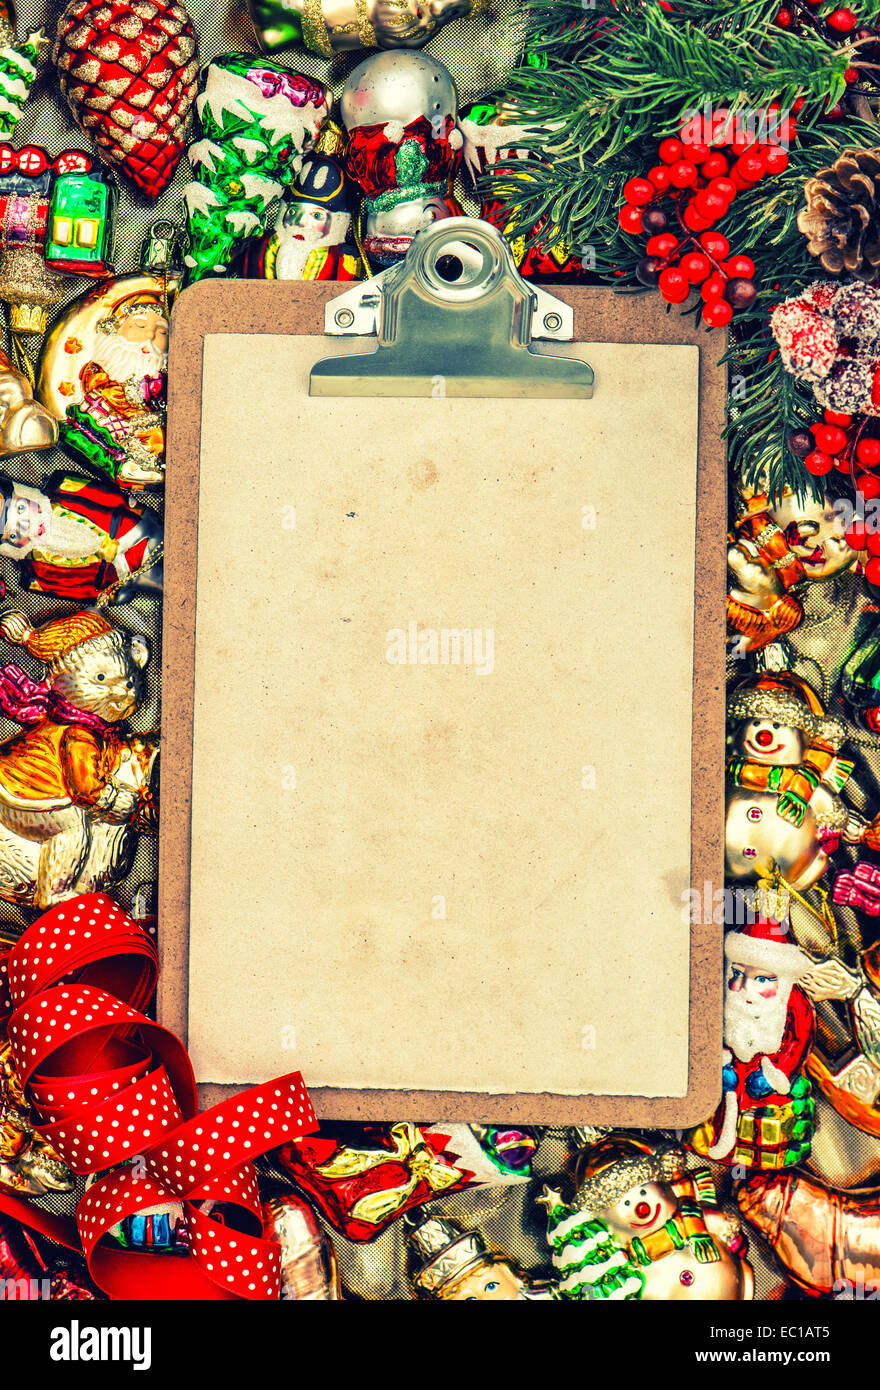 Zwischenablage mit Papier für einen Brief. Weihnachten Urlaub Hintergrund. Retro-Stil getönten Bild Stockfoto